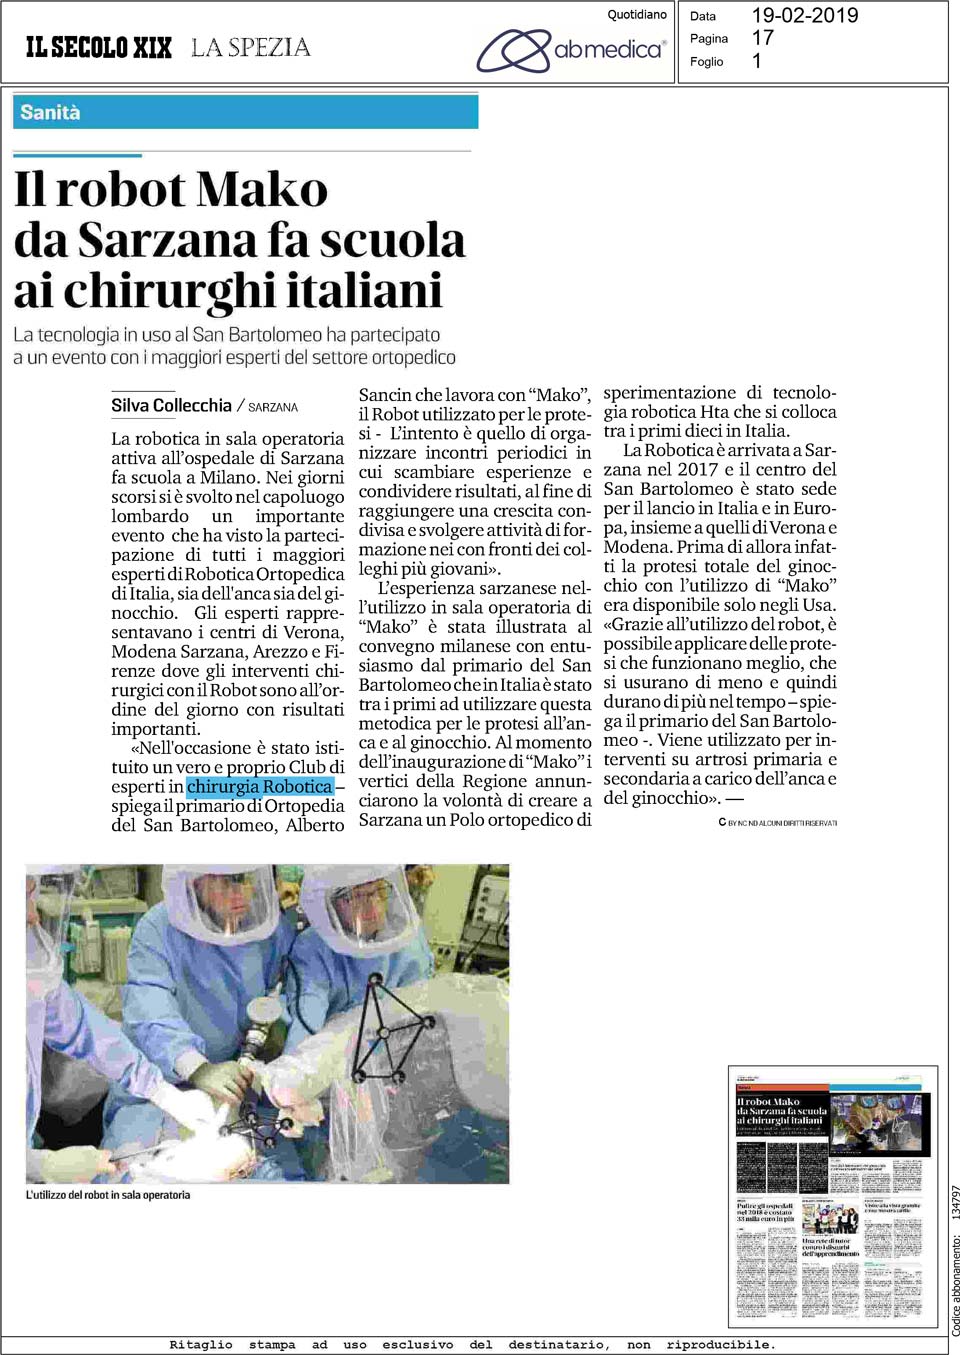 Il robot Mako da Sarzana fa scuola ai chirurghi italiani